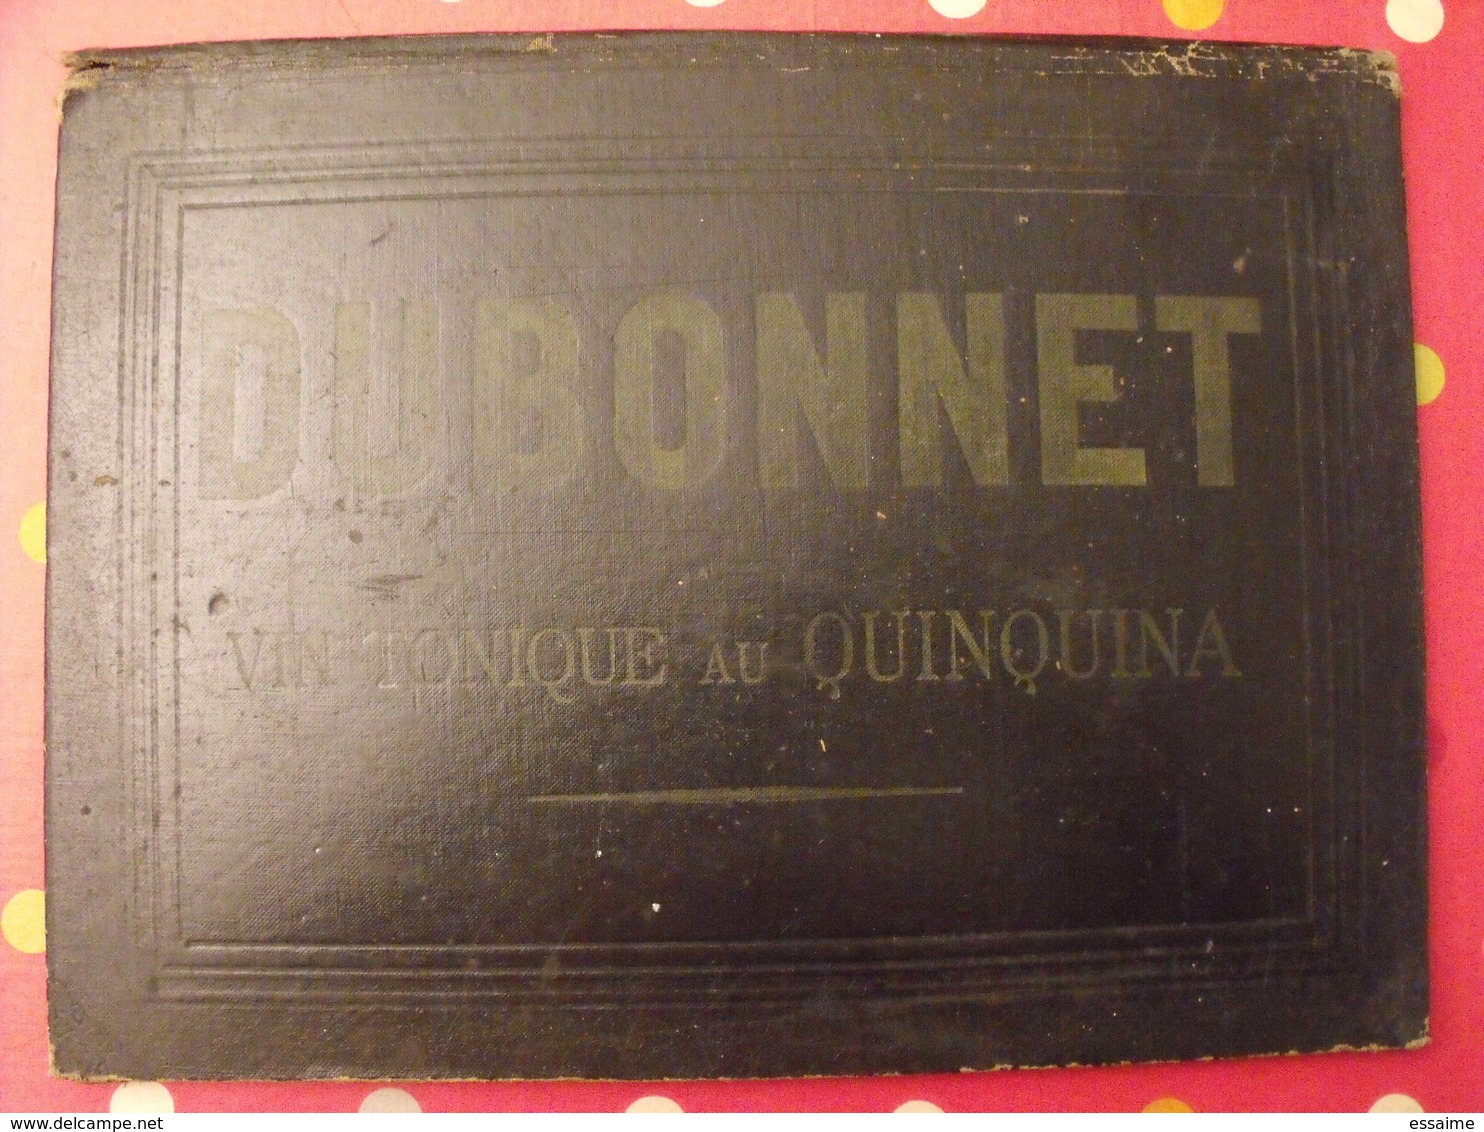 Sous-main Dubonnet, Vin Tonique Au Quiquina. Apéritif. Champagne Morlant Reims. Illustrateur : J Stall. Vers 1930 - Paperboard Signs